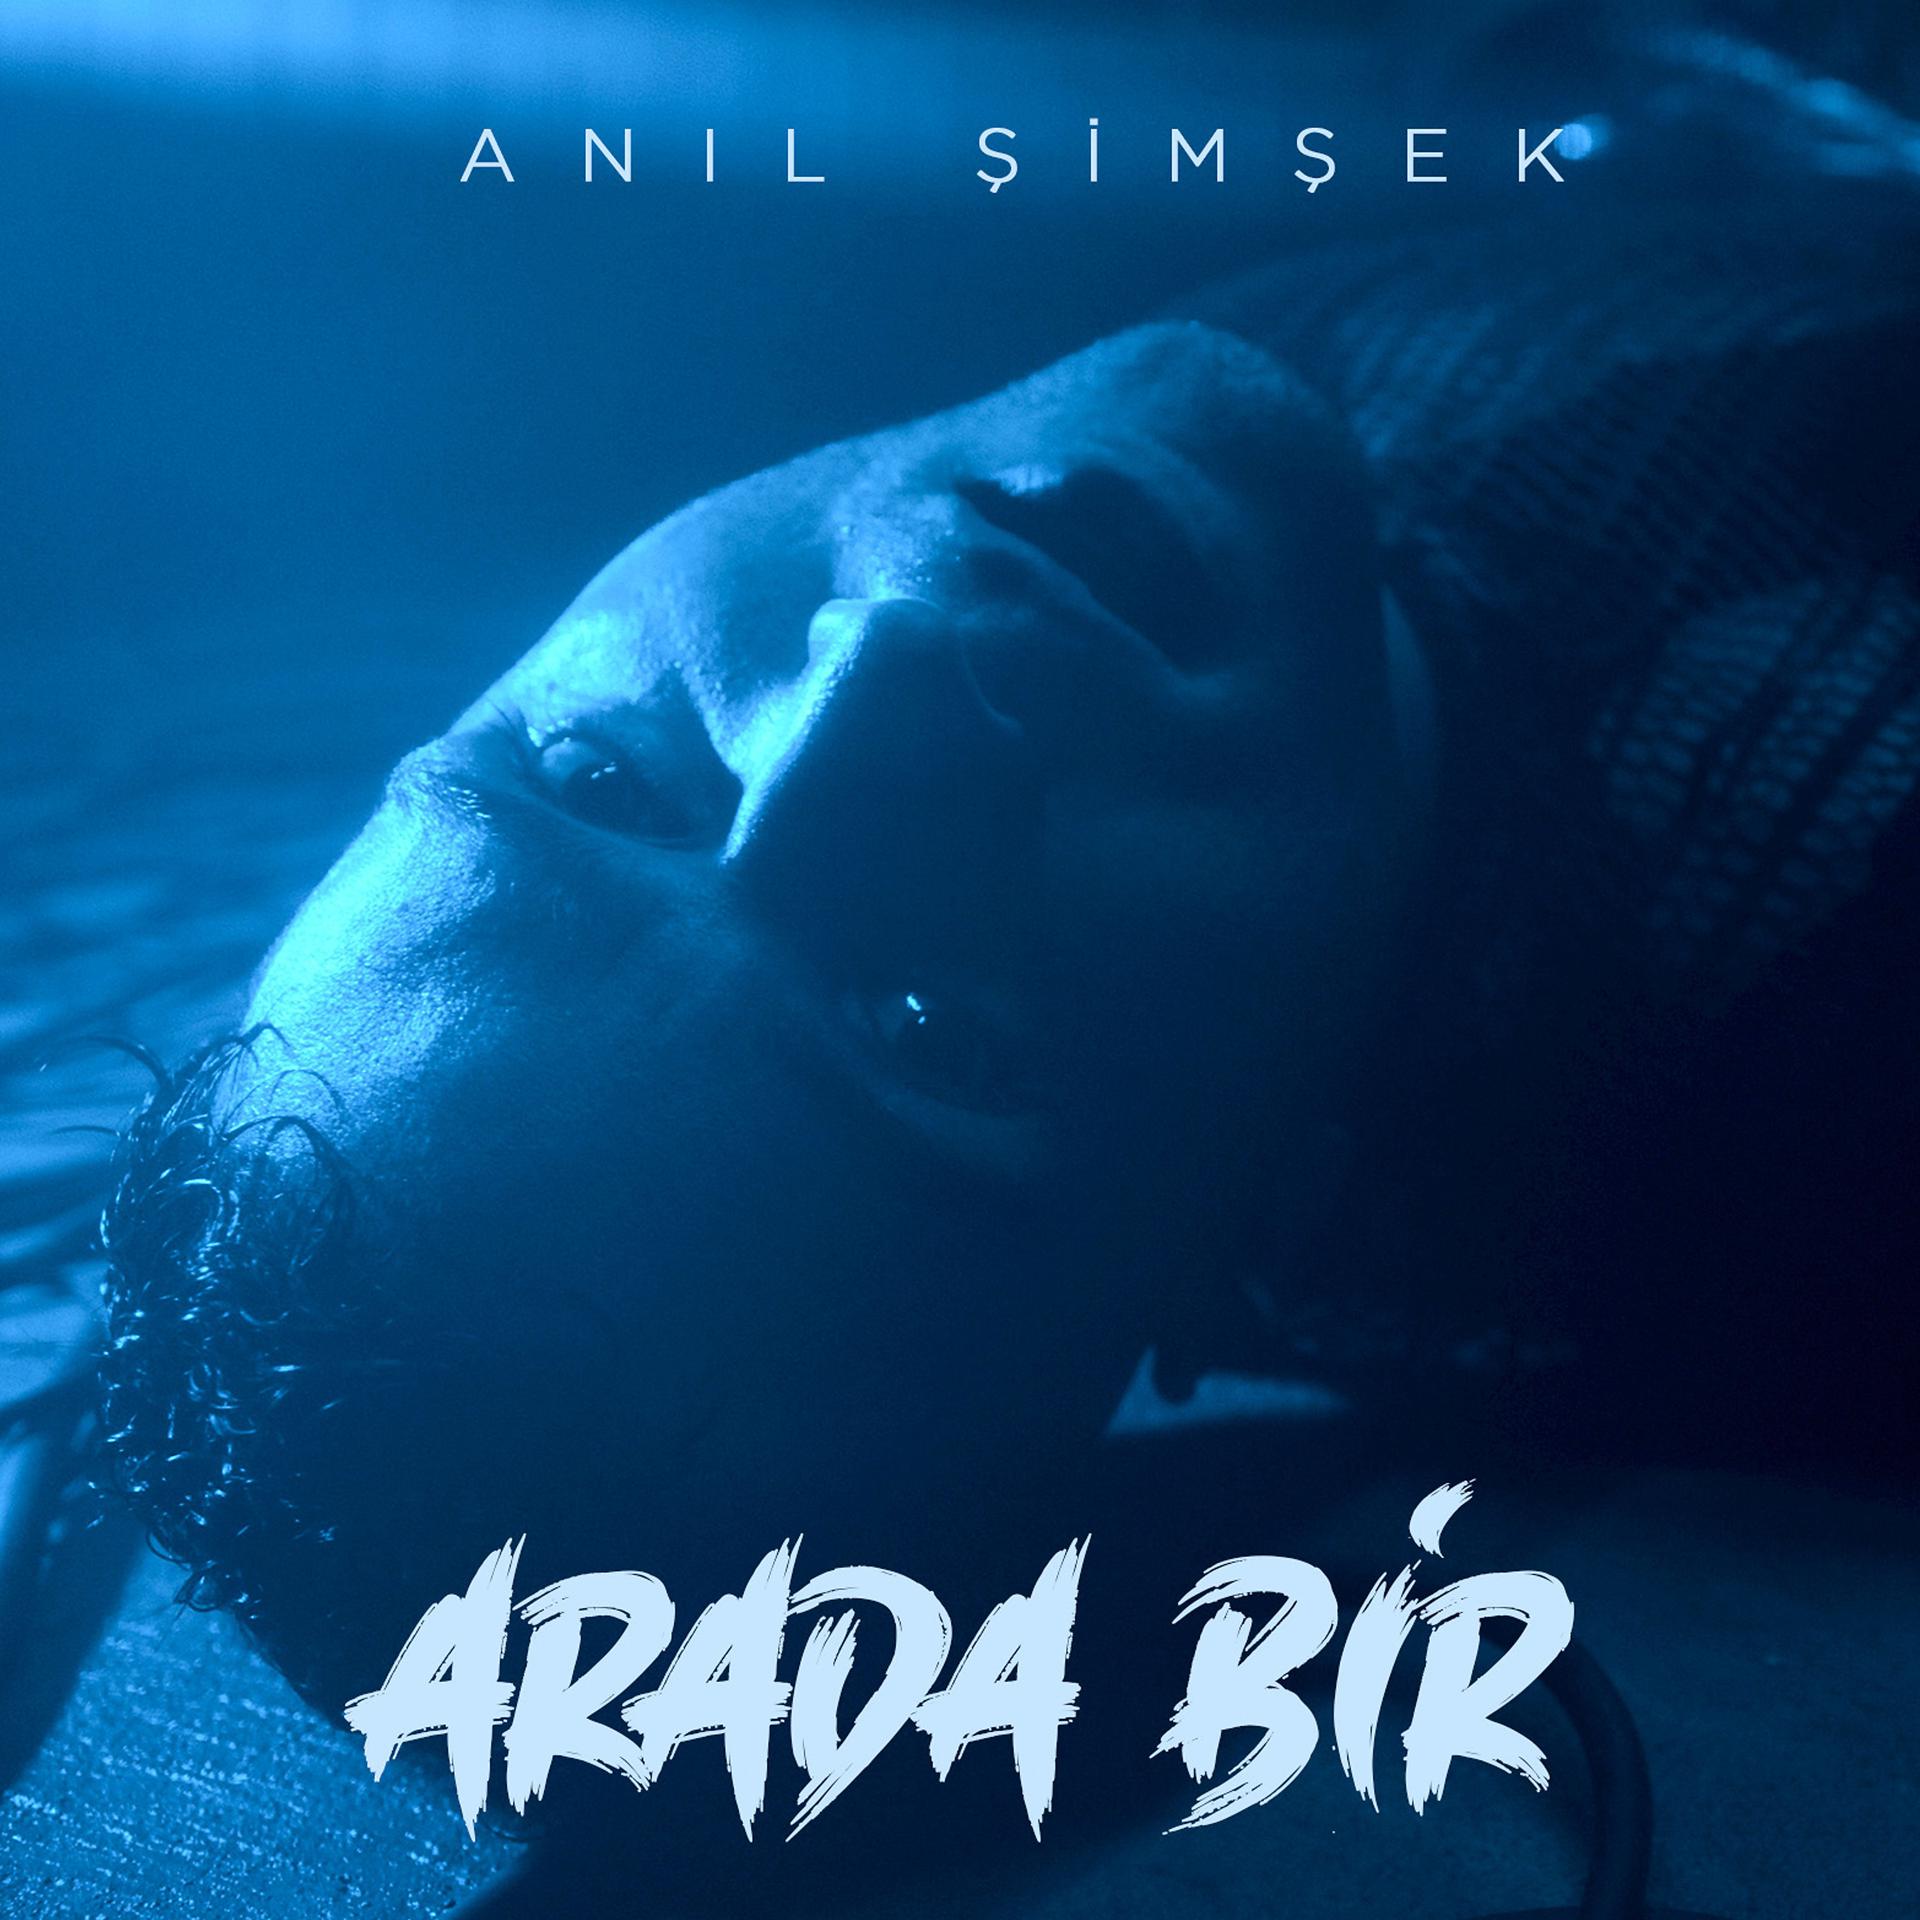 Постер альбома Arada Bir